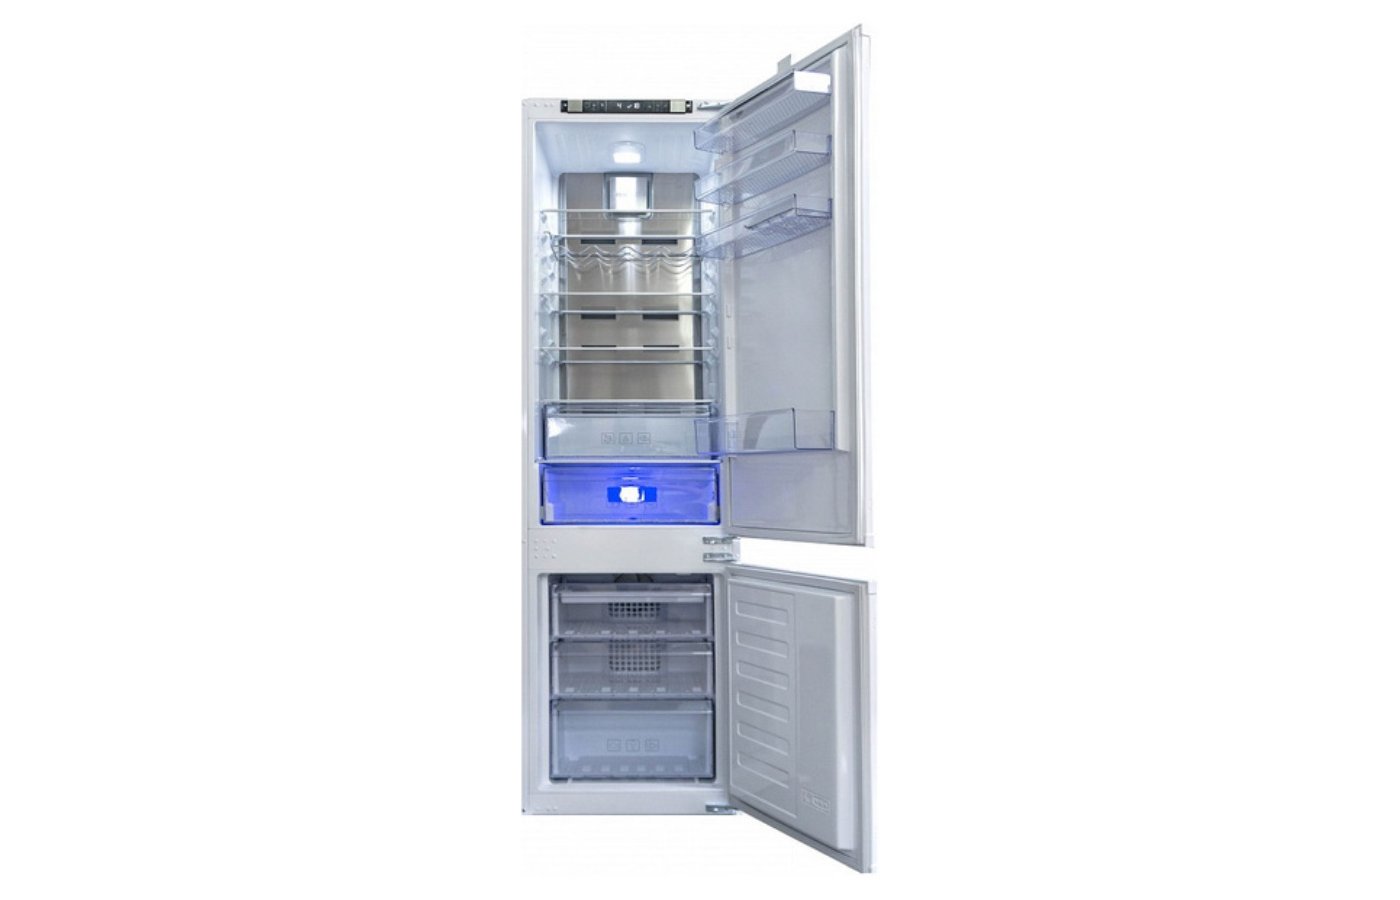 Встраиваемый холодильник beko bcna275e2s. Beko bcna306e2s. Встраиваемый холодильник Beko bcna306e2s. Встроенный холодильник Beko bcna306e2s. Встраиваемый холодильник Beko bcna306e2s схема встраивания.